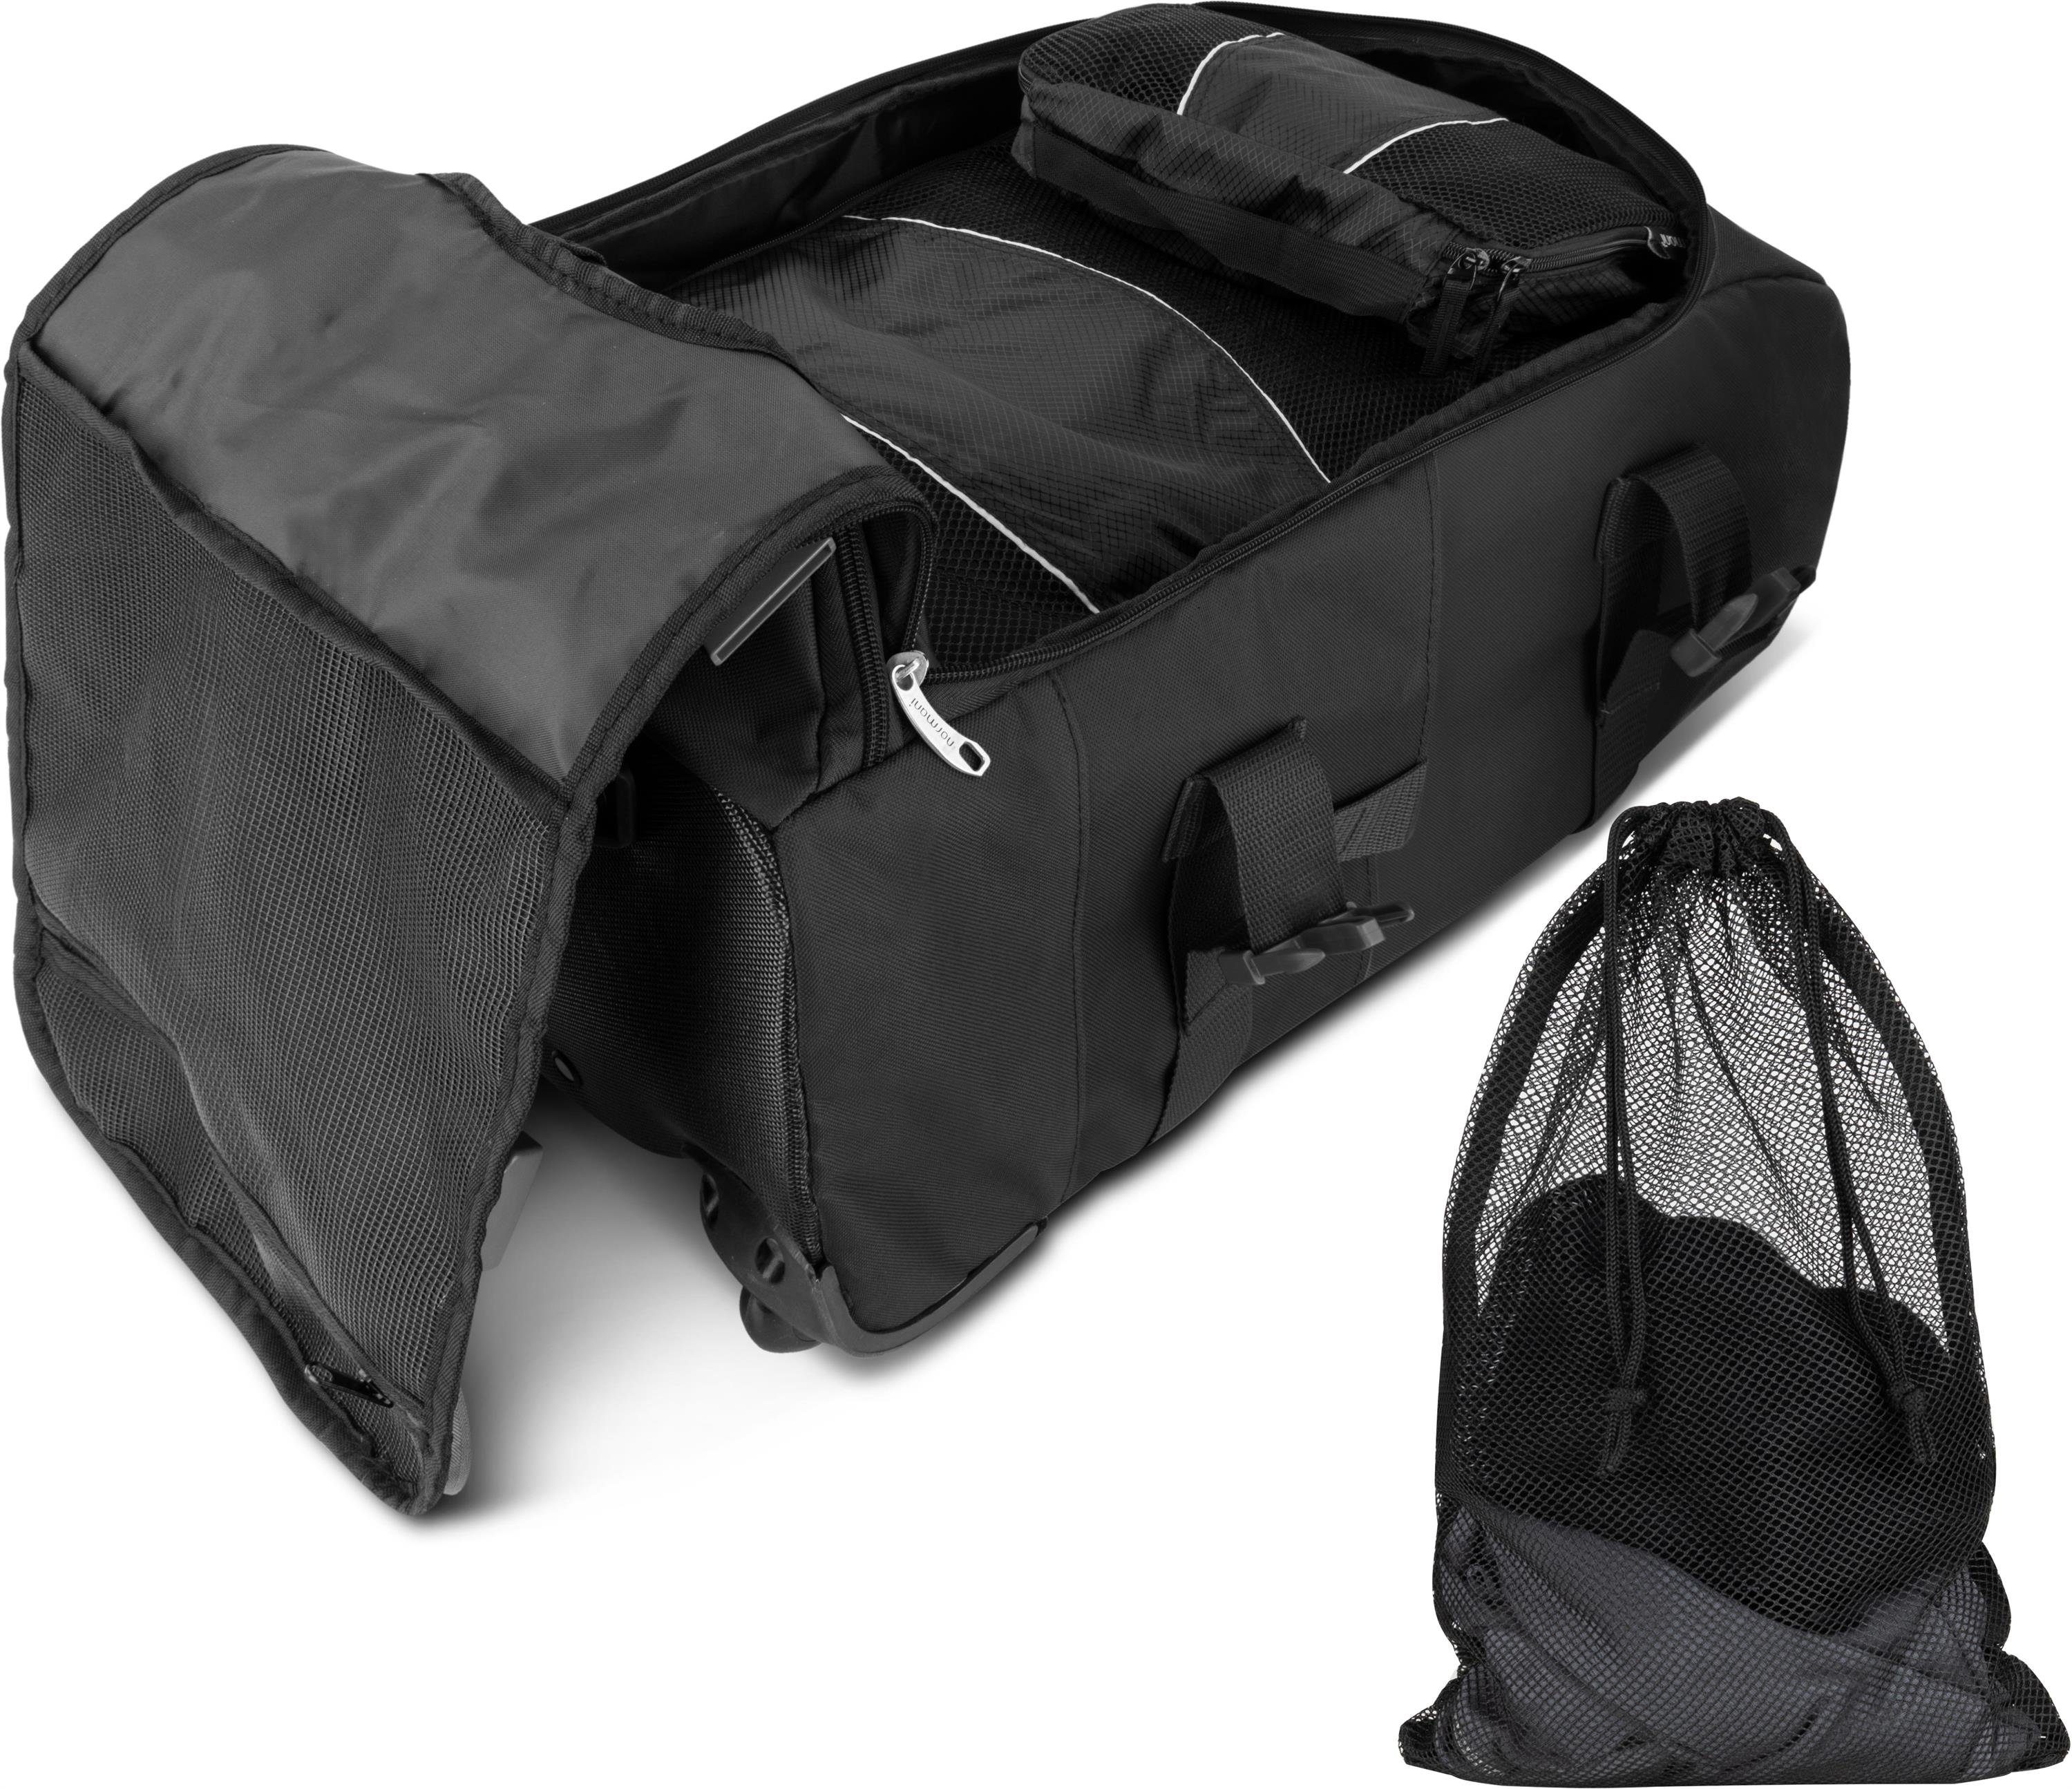 Trolley passenden Schwarz Reisetasche Rucksack - Kleidertaschen 5 Melano, normani mit Reisetasche und 2-in-1